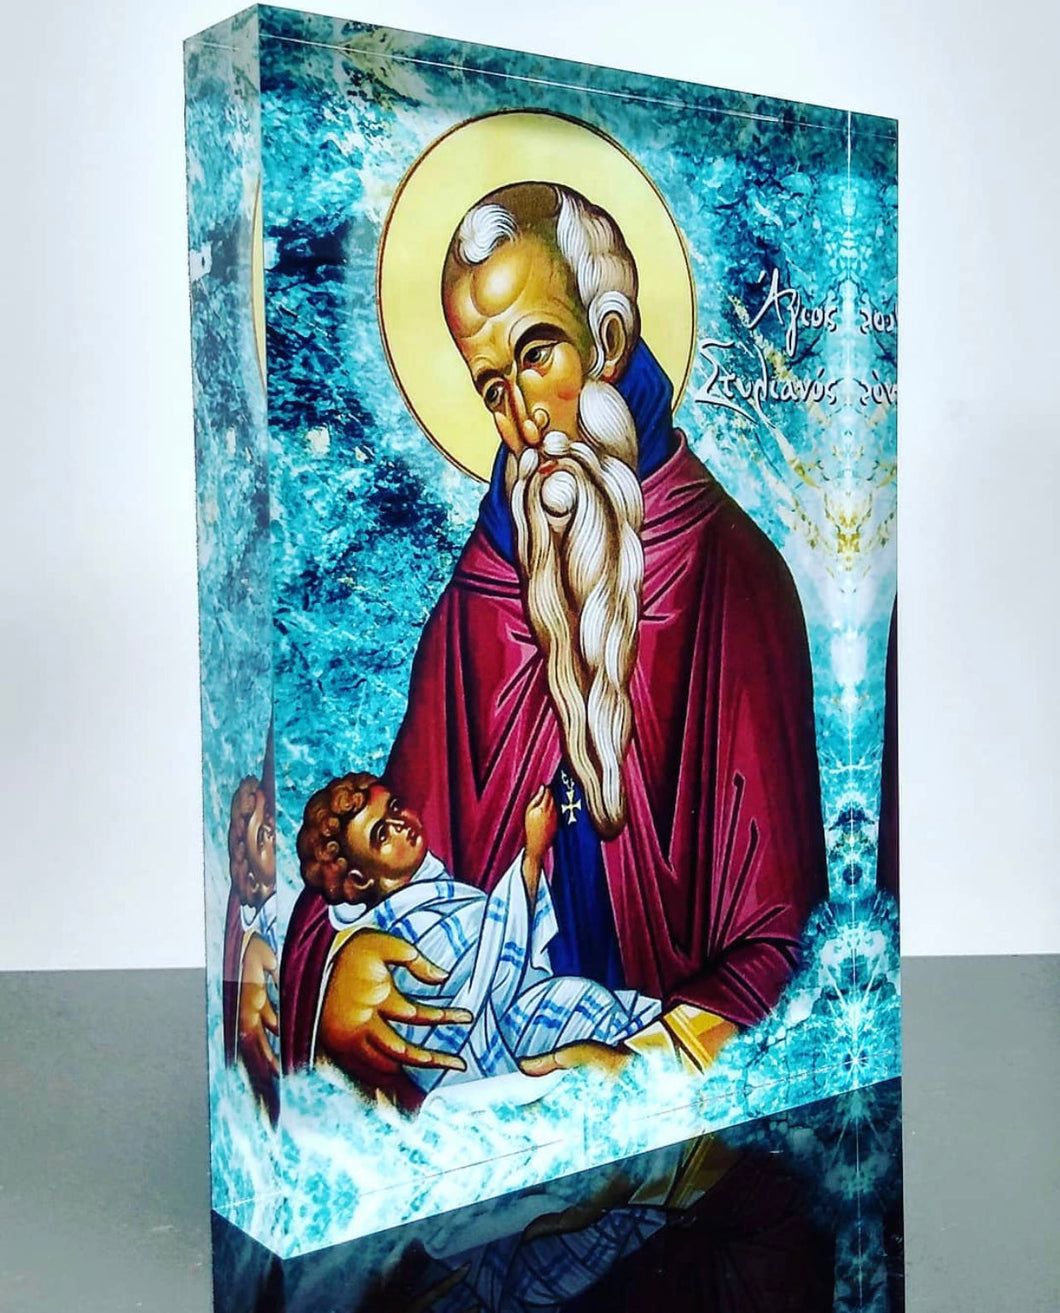 Ἁγιος Στυλιανὀς Saint Stylianos Icon